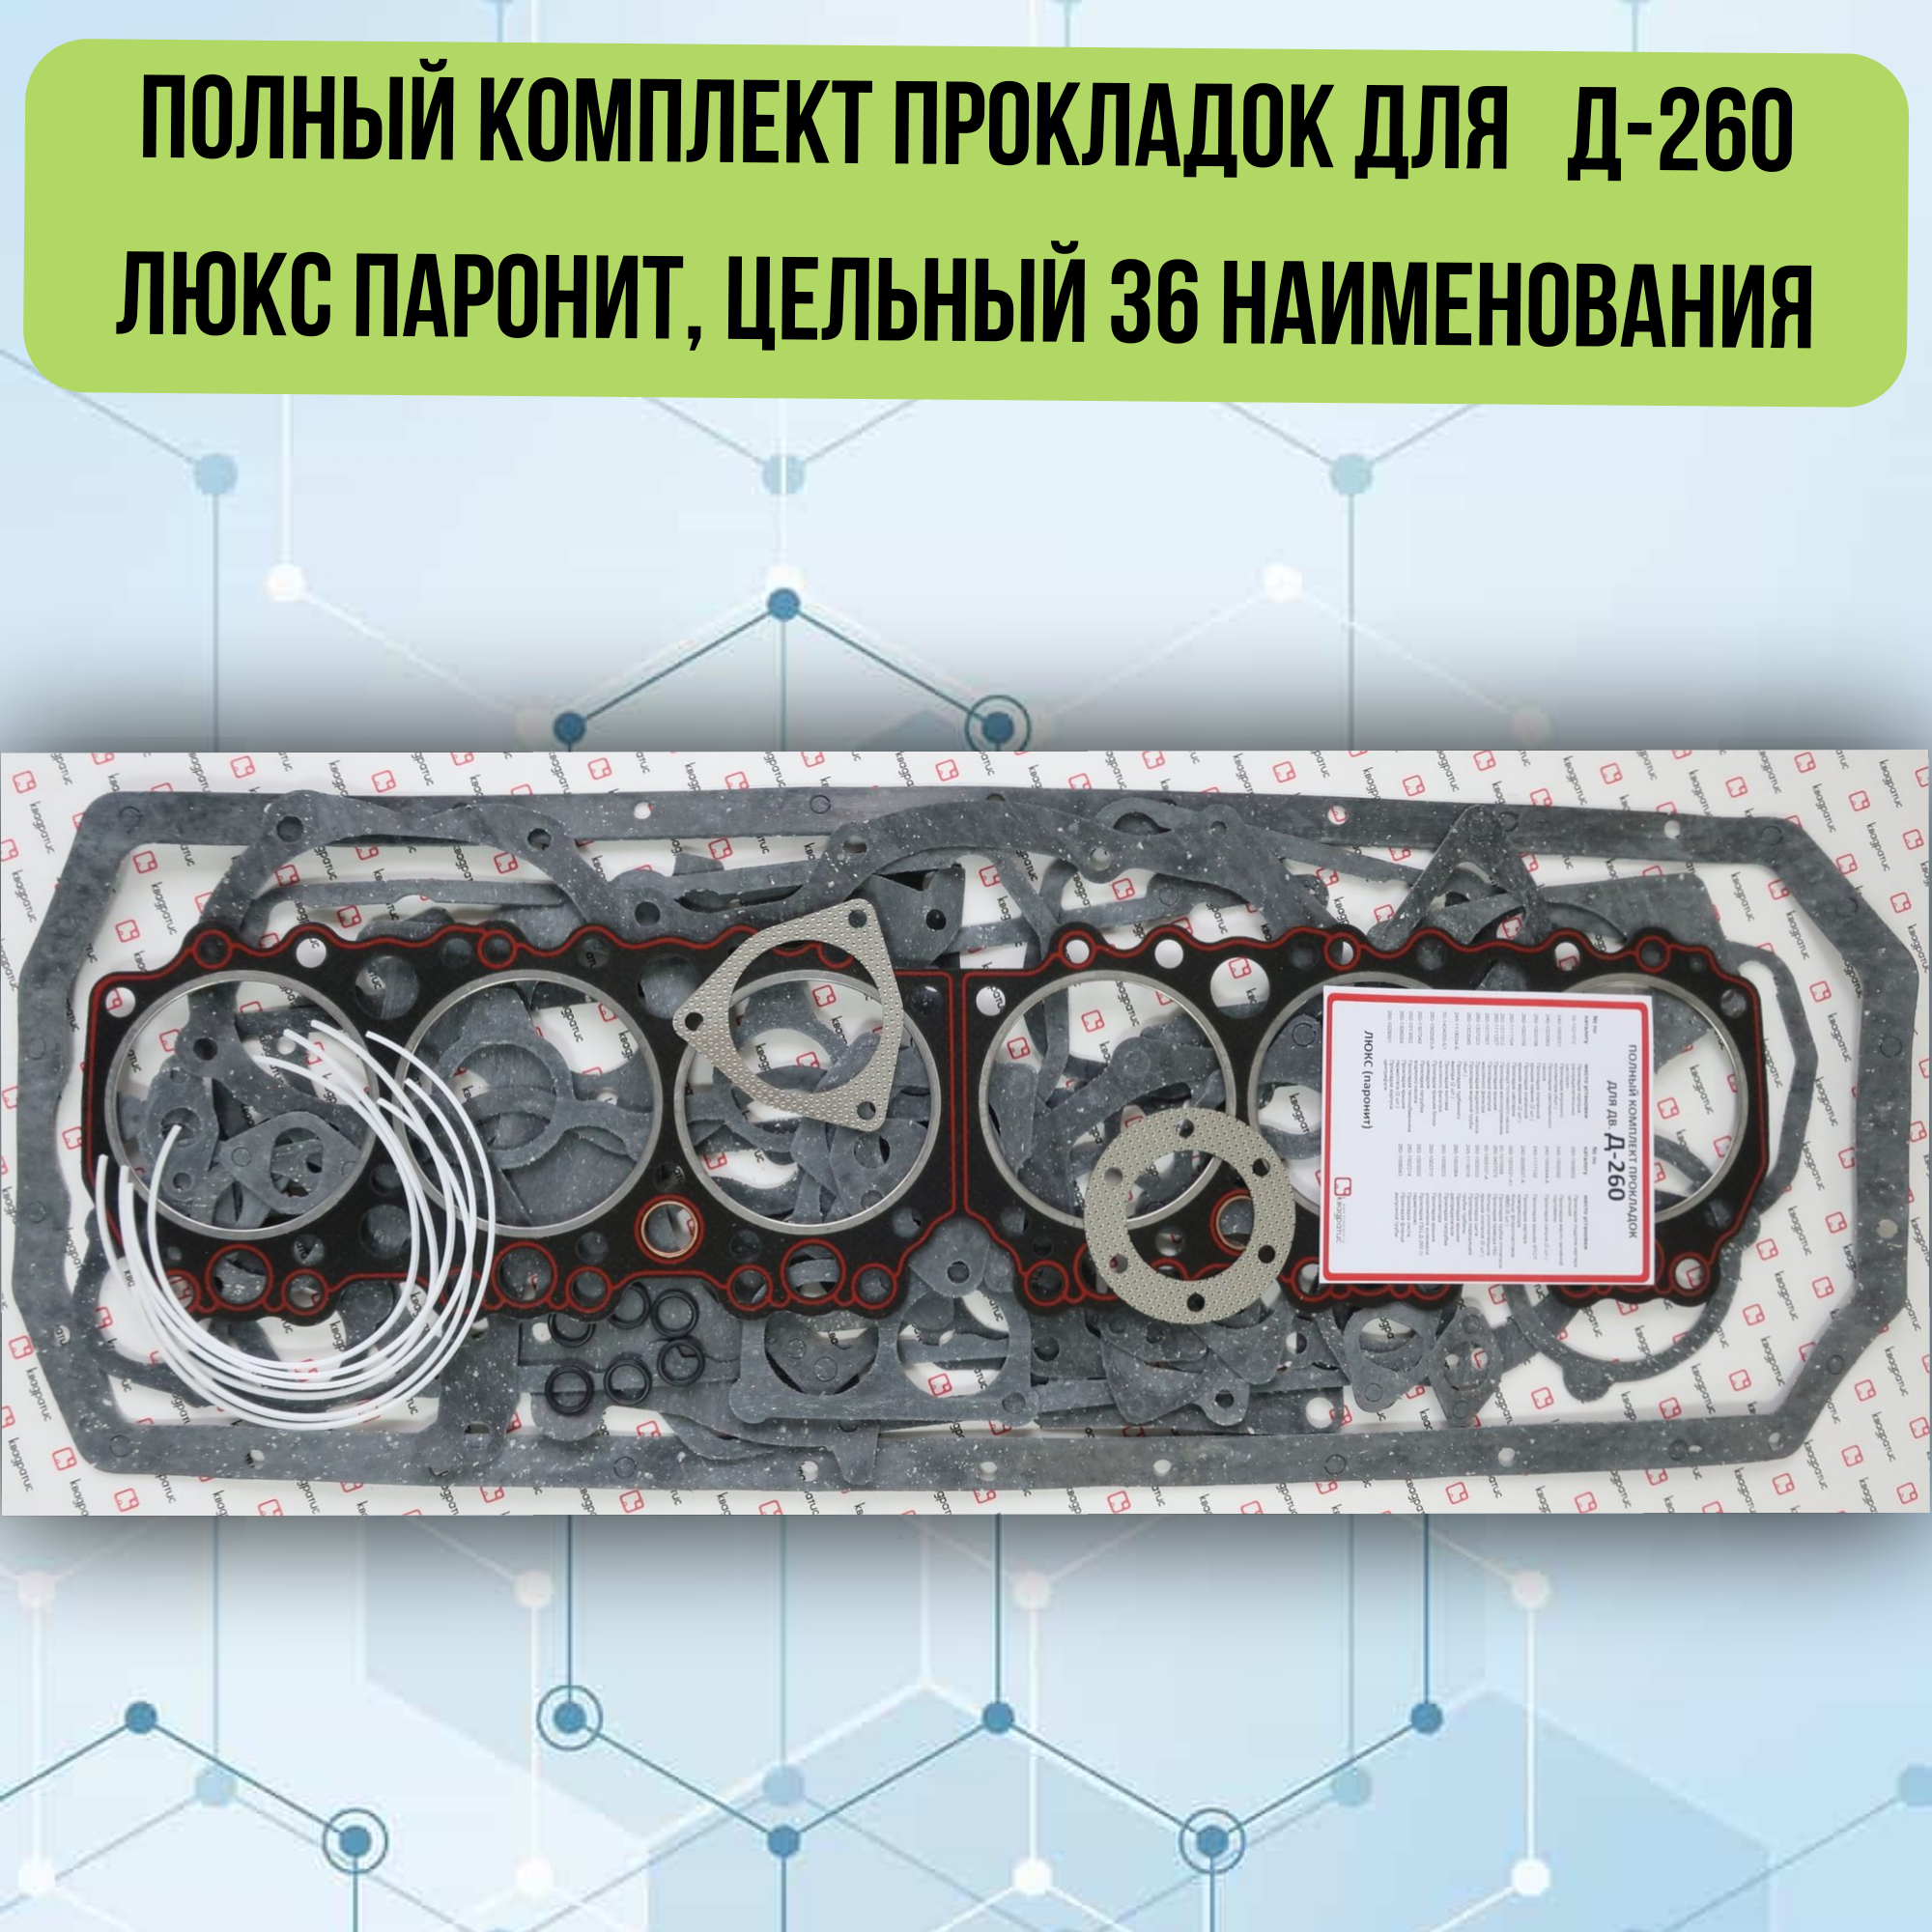 Полный комплект прокладок для Д-260 Люкс паронит, цельный 36 наименования KVP-260-1000001-01-03